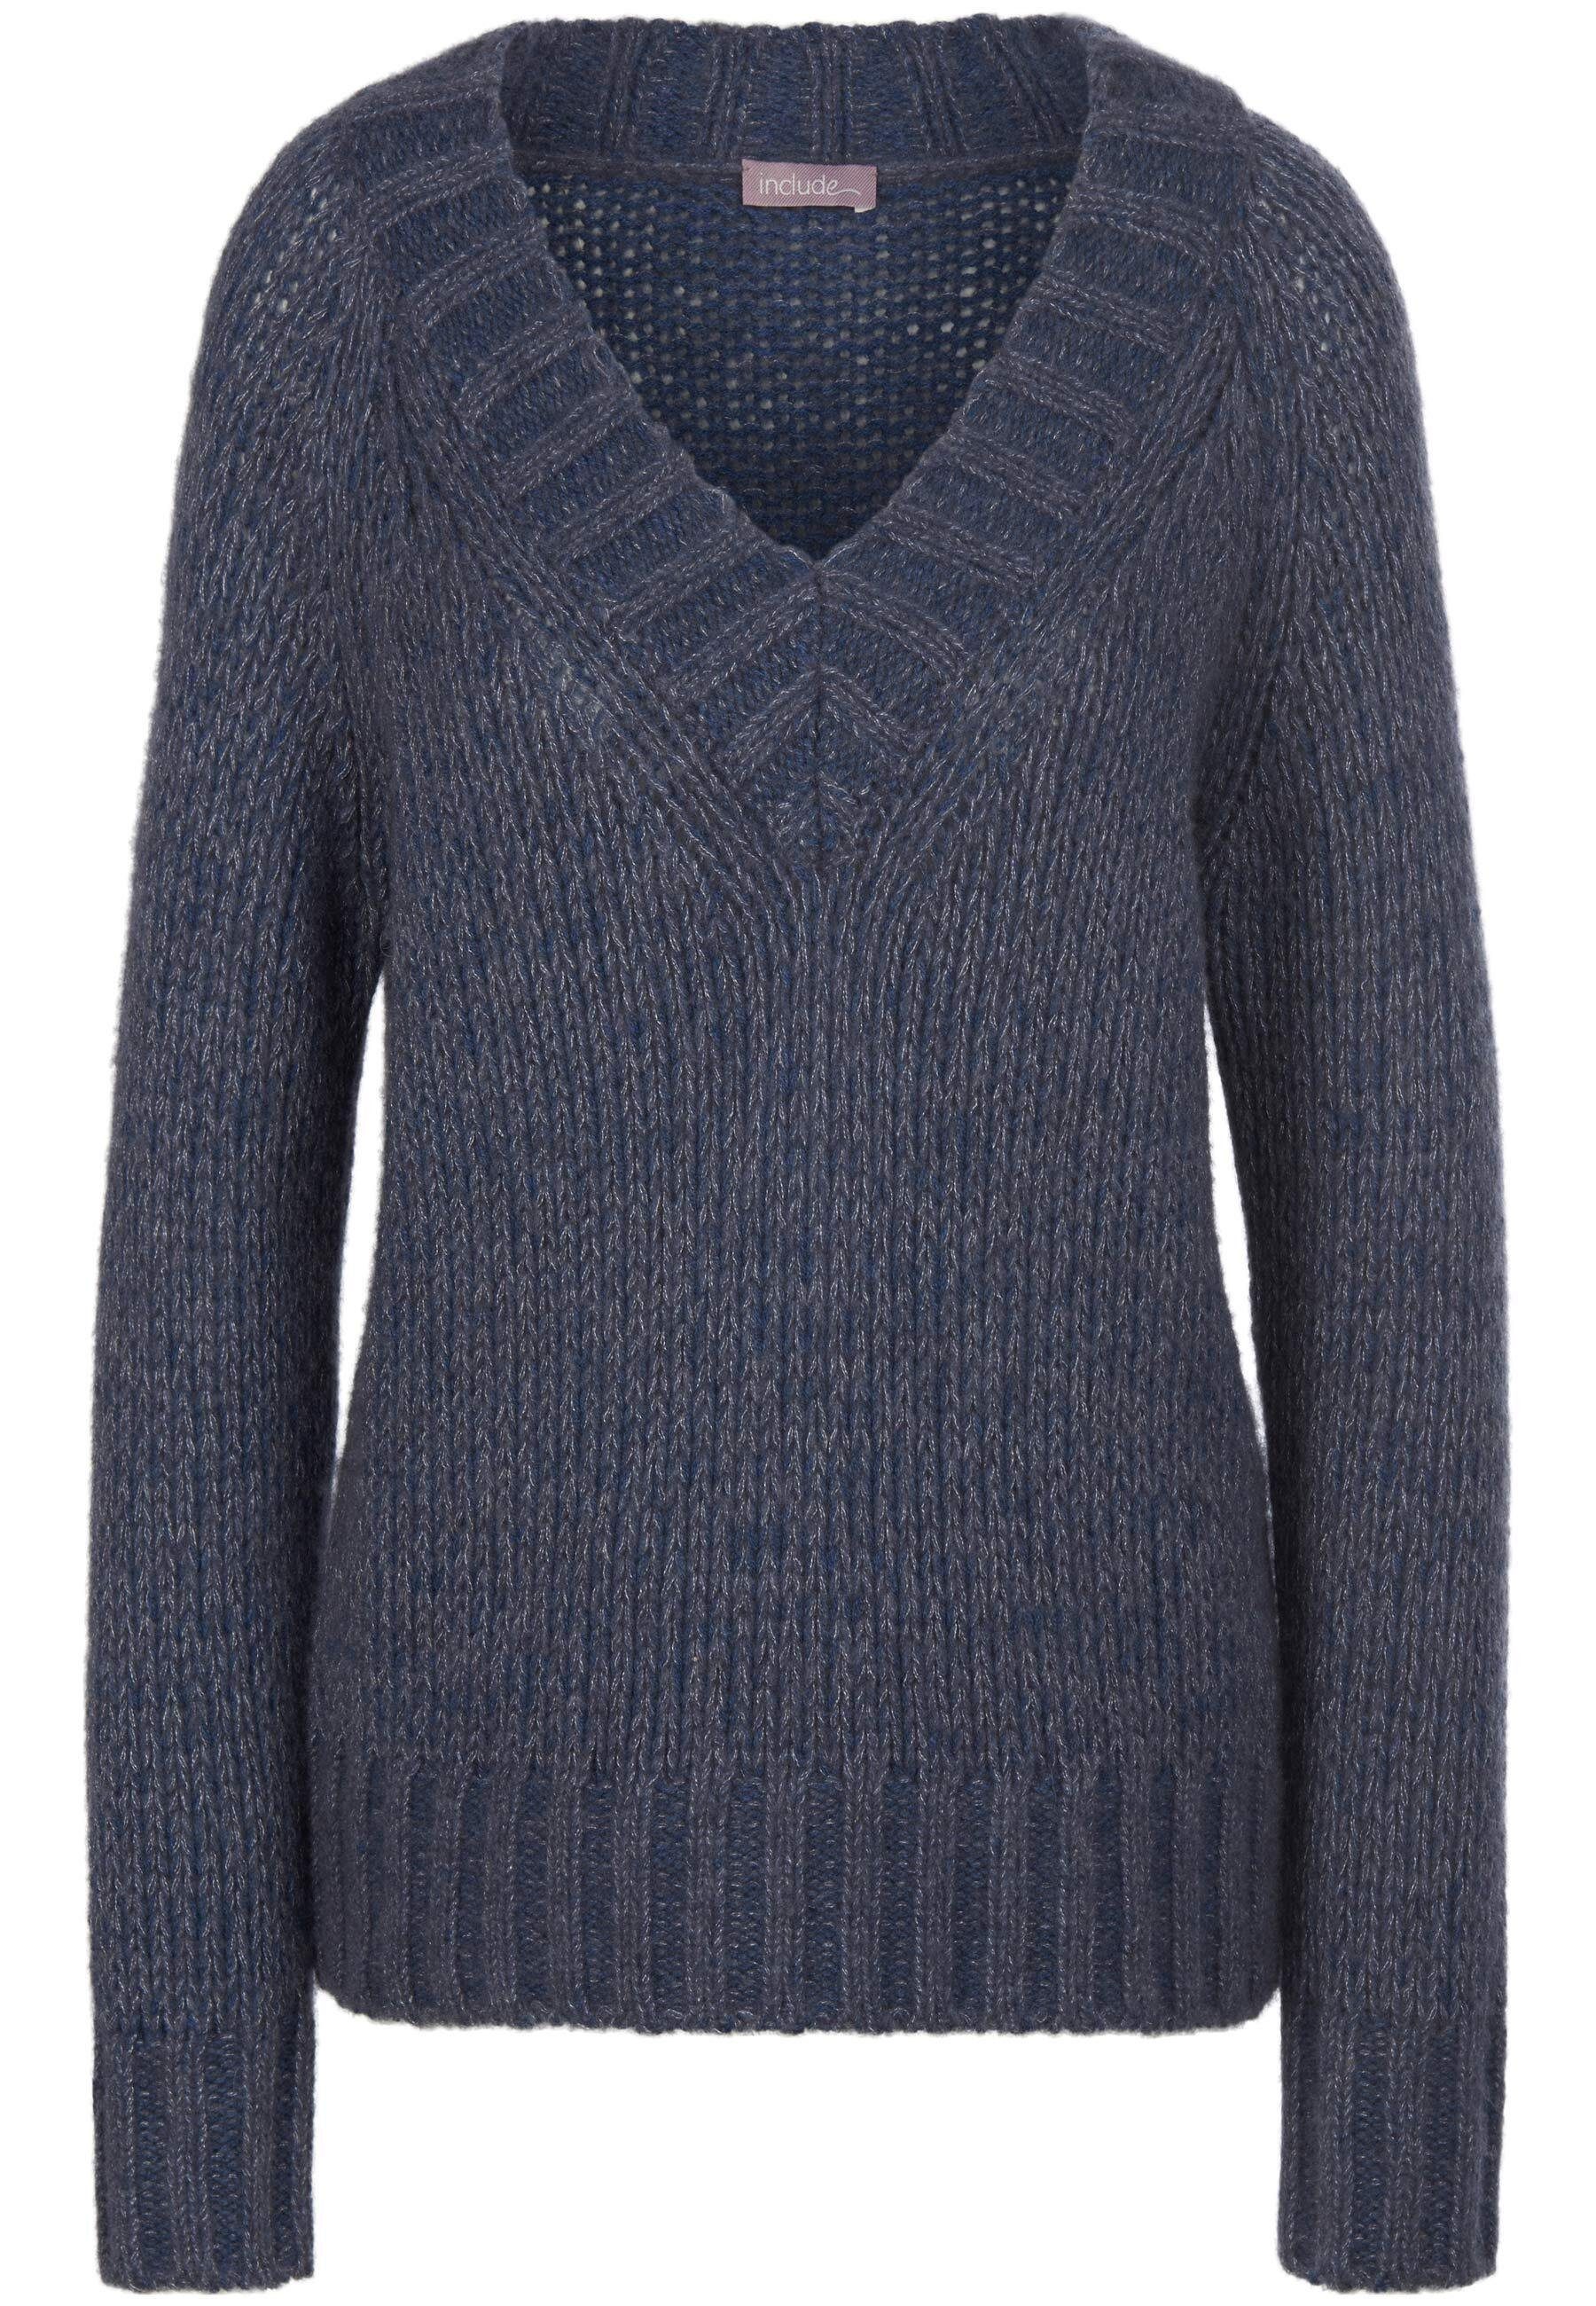 Strickpullover jeansblau-melange wool include